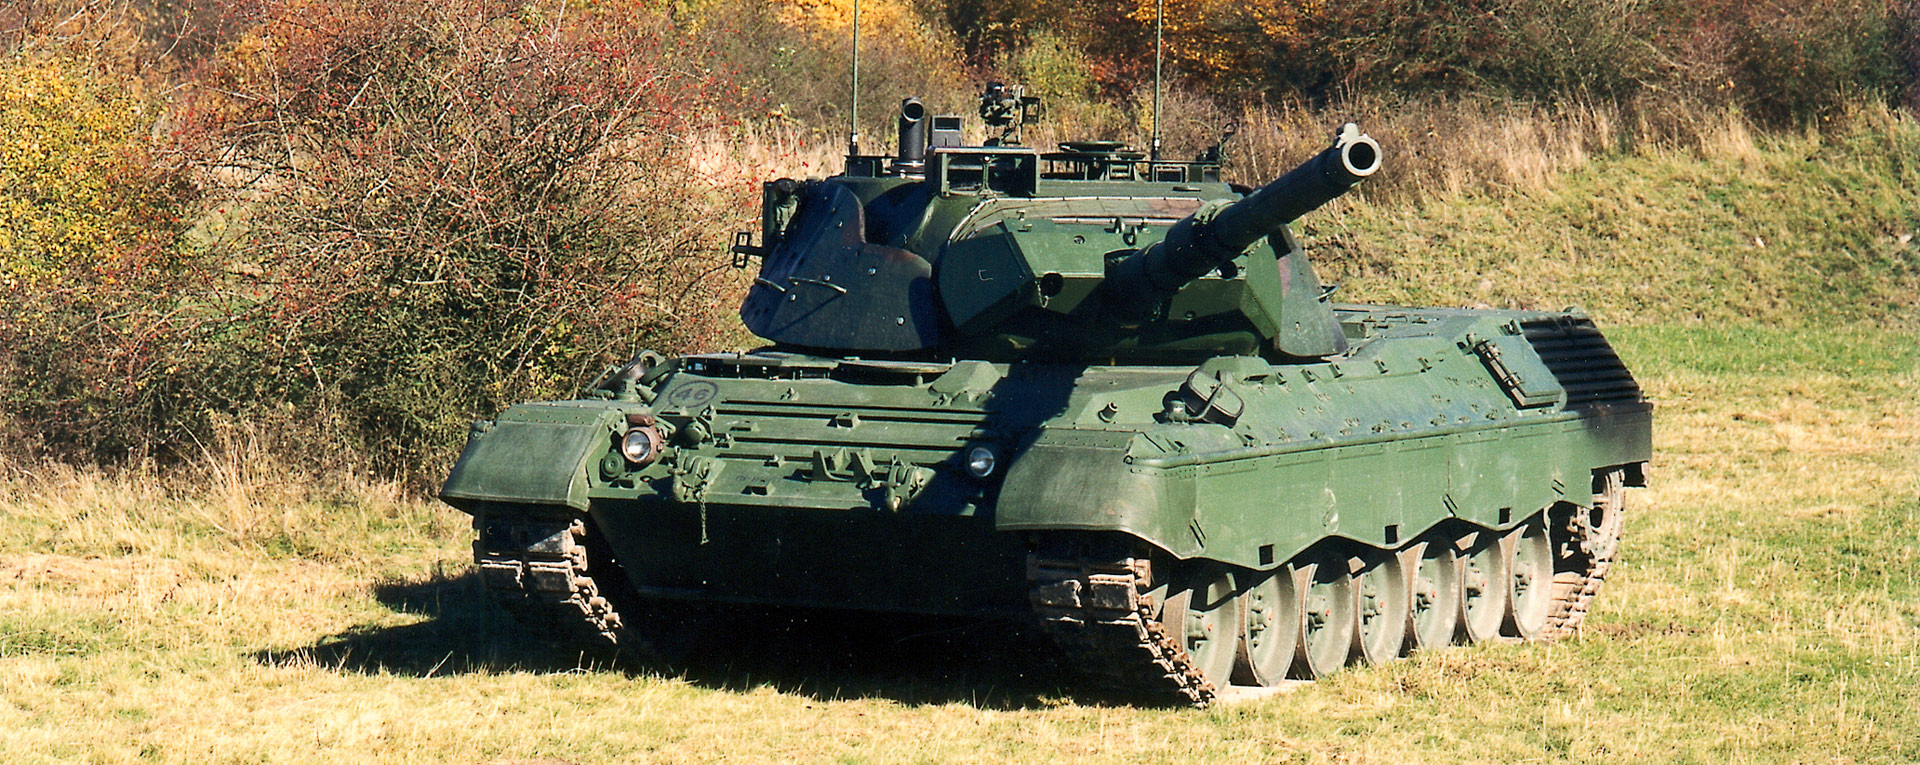 Γερμανία: Οι τελευταίες δοκιμές για τα Leopard 1A5 λίγο πριν σταλούν στην Ουκρανία